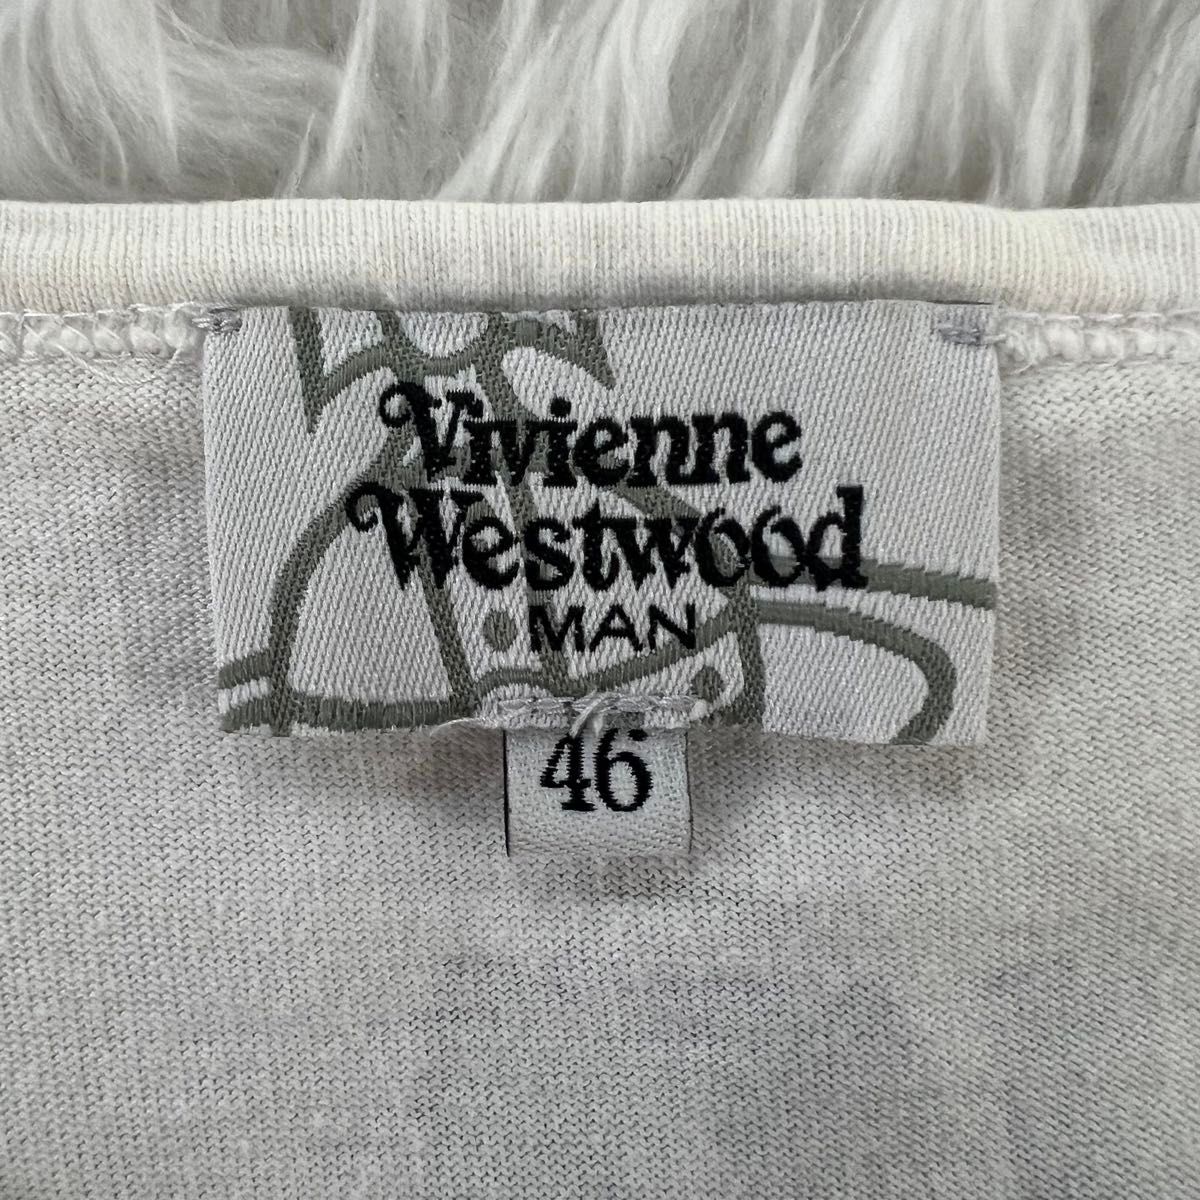 ヴィヴィアンウエストウッド メンズ 刺繍ロゴ オーブ 総柄 tシャツ M カットソー Tシャツ プリント 半袖